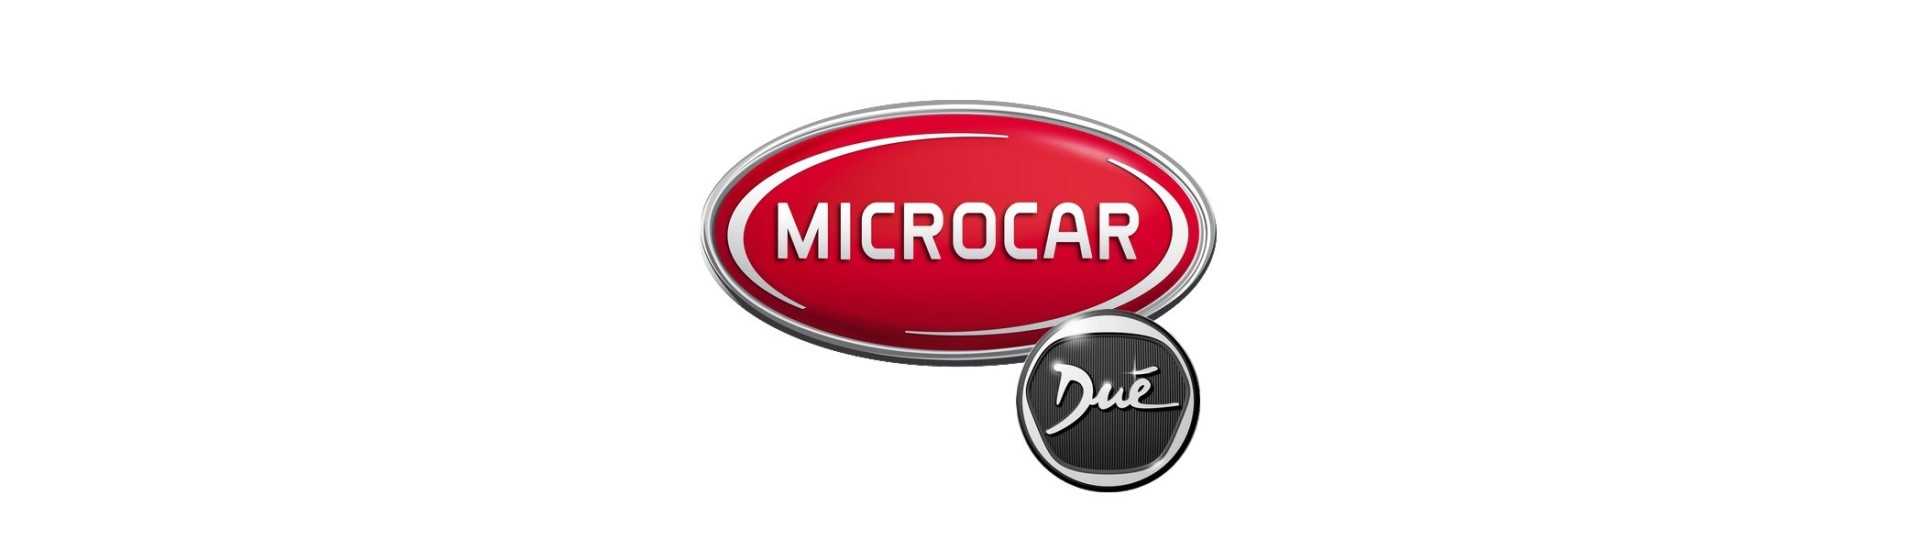 Katadioptre till bästa pris för bil utan tillstånd Microcar Dué